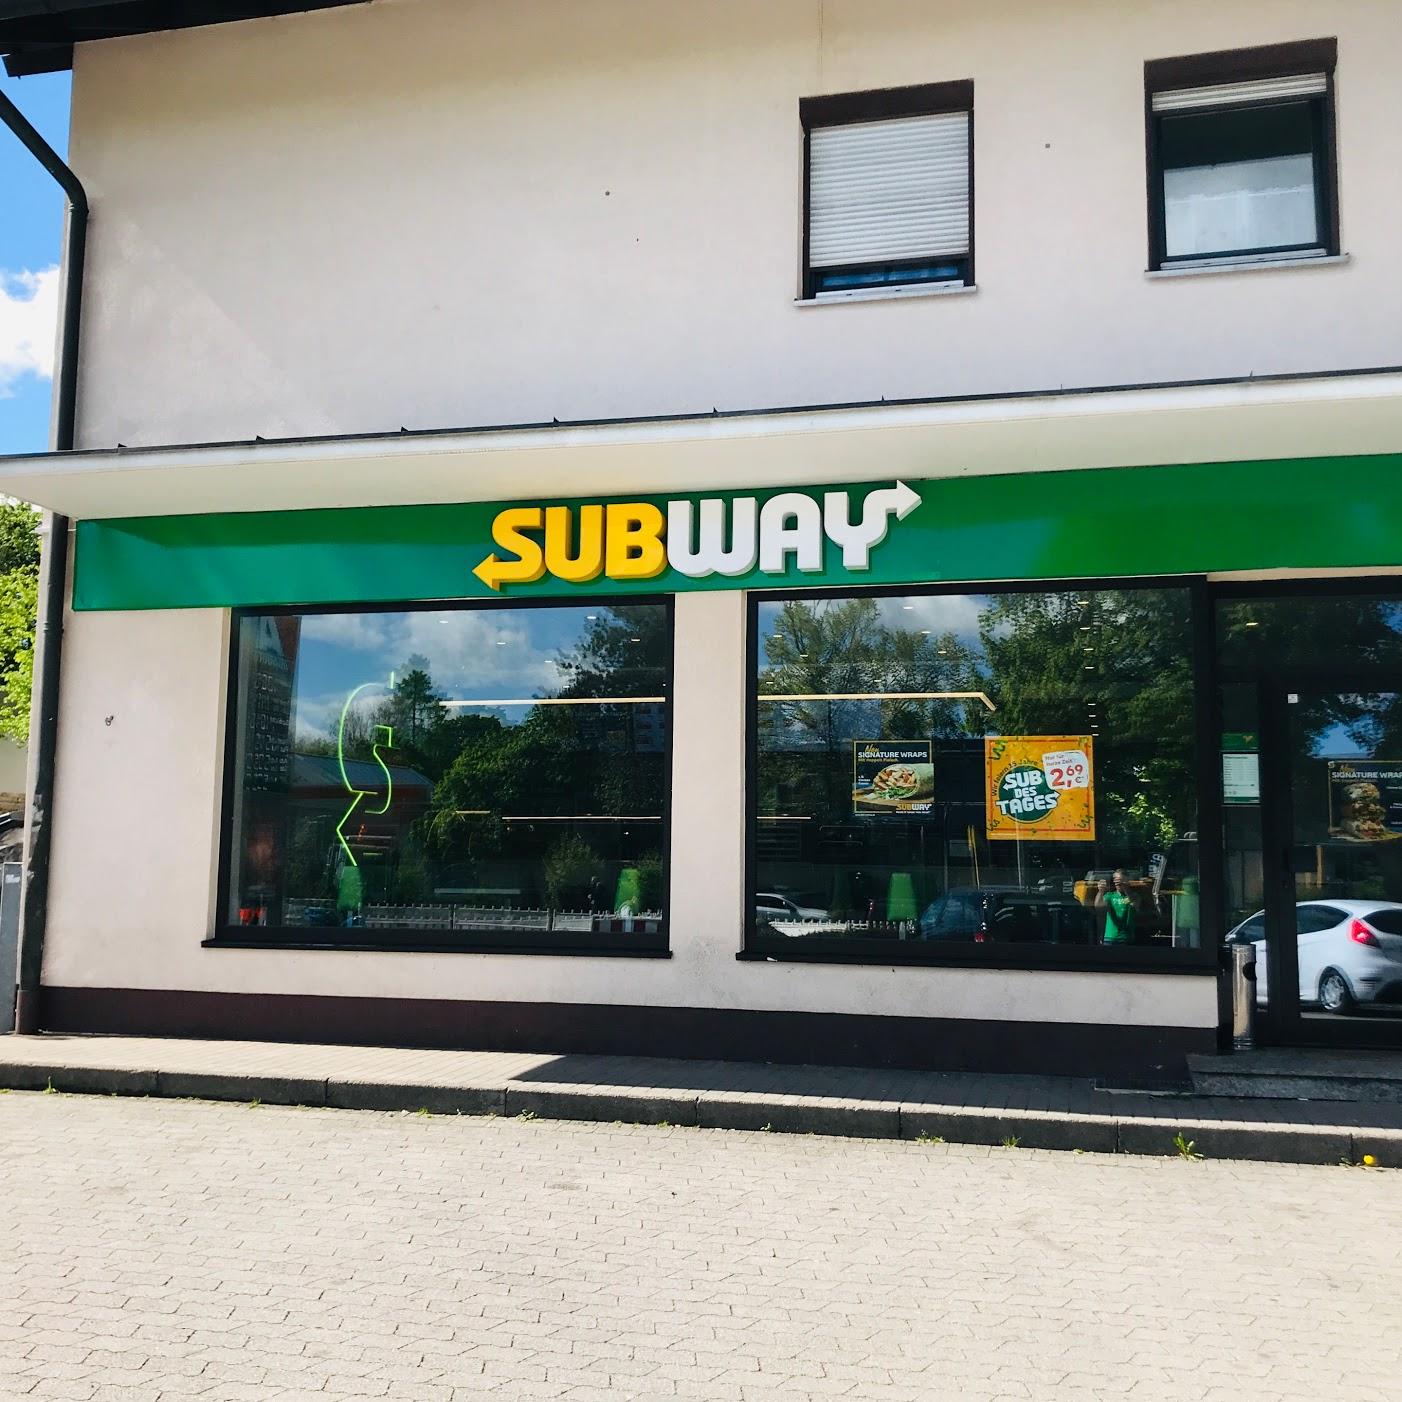 Restaurant "Subway" in München